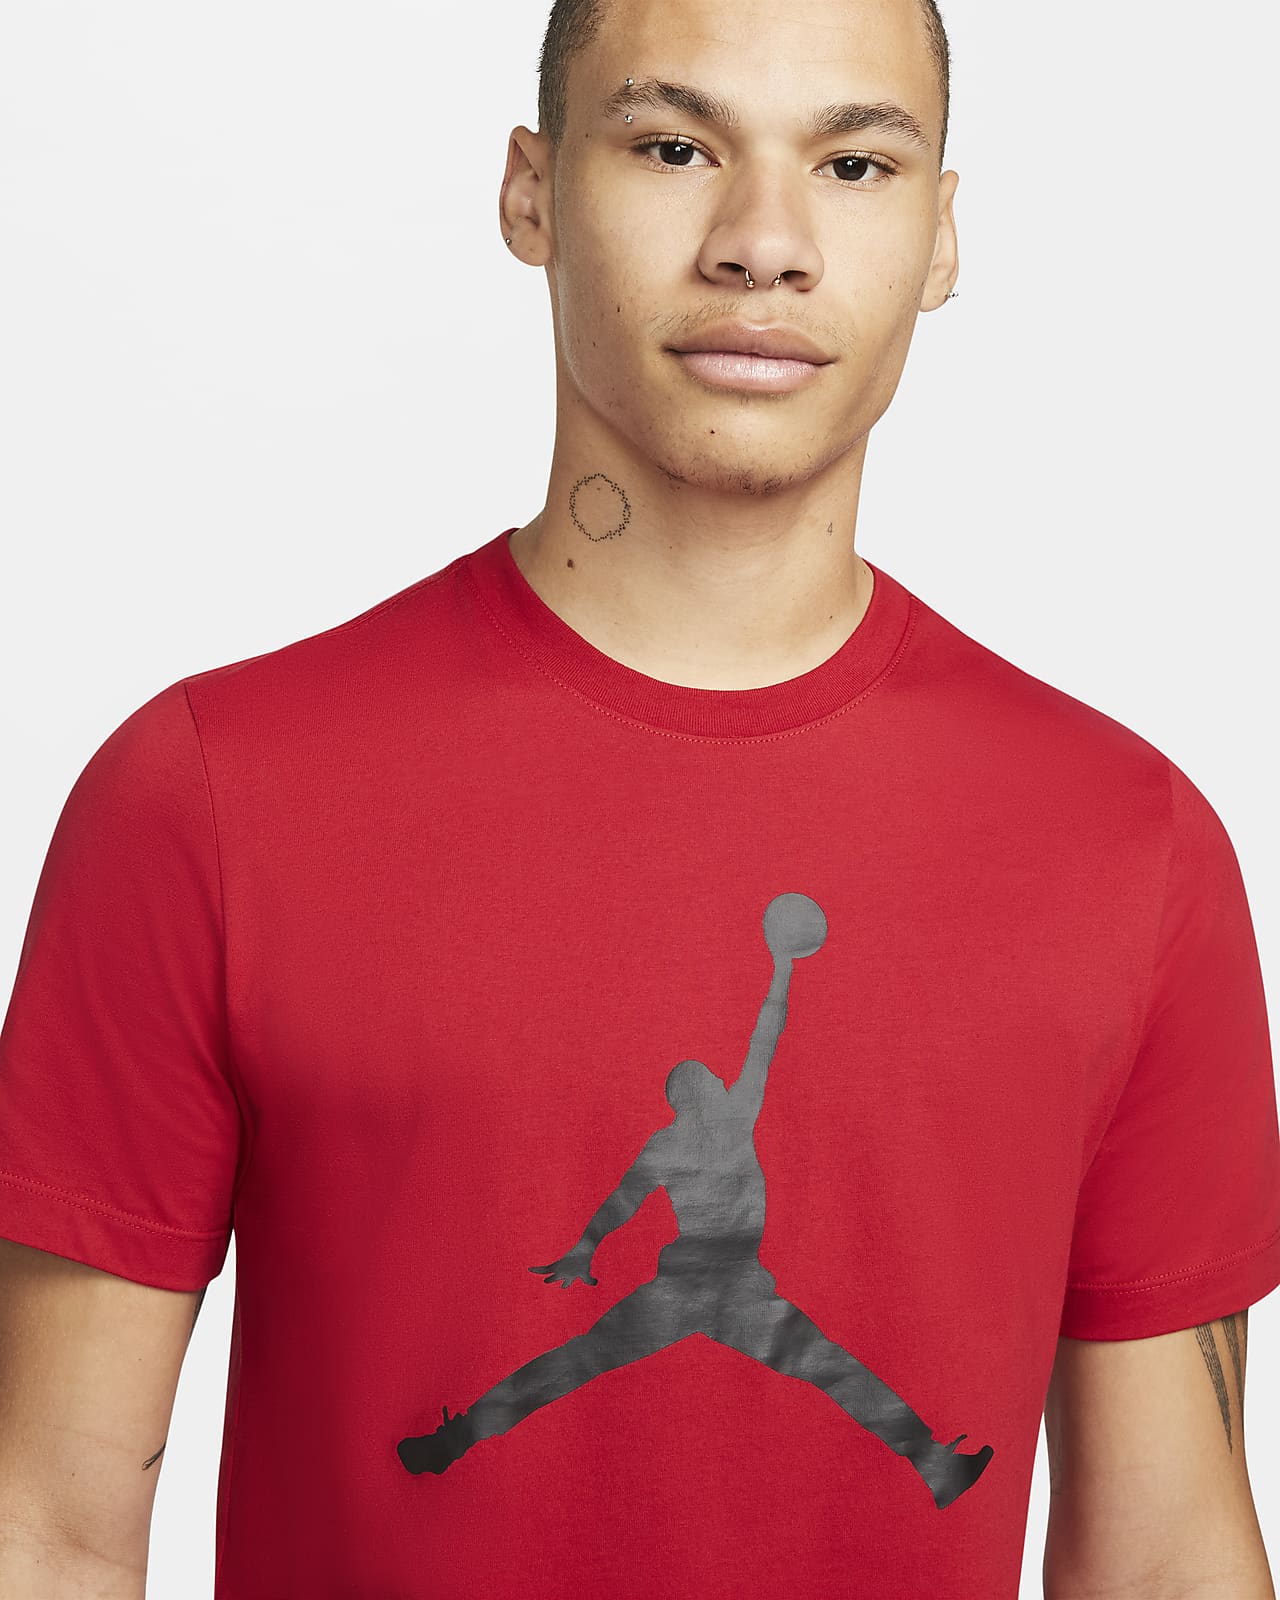 Jordan, Shirts